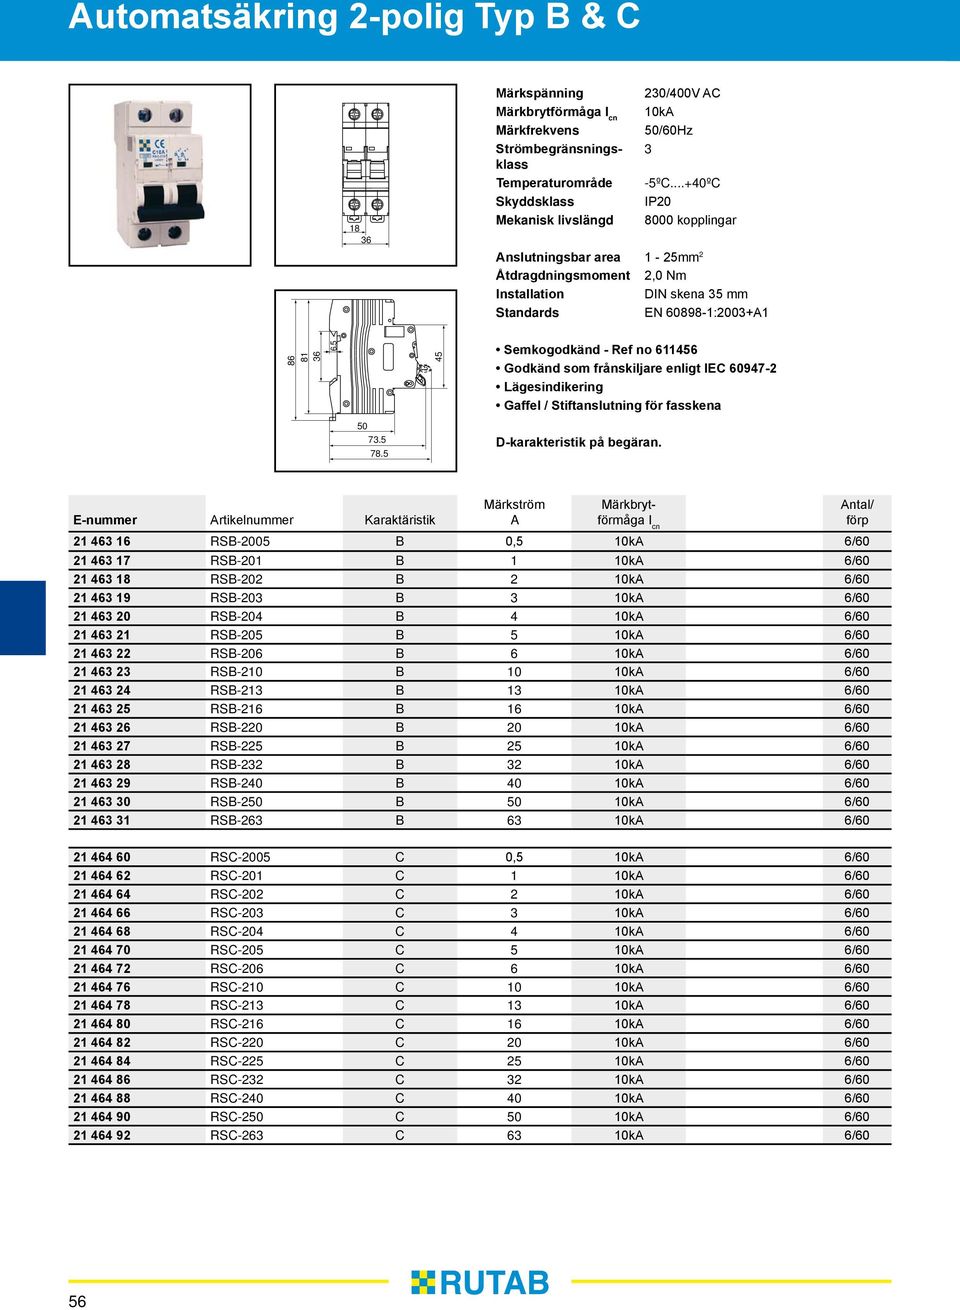 5 45 Semkogodkänd - Ref no 611456 Godkänd som frånskiljare enligt IEC 60947-2 Lägesindikering Gaffel / Stiftanslutning för fasskena 50 73.5 78.5 D-karakteristik på begäran.